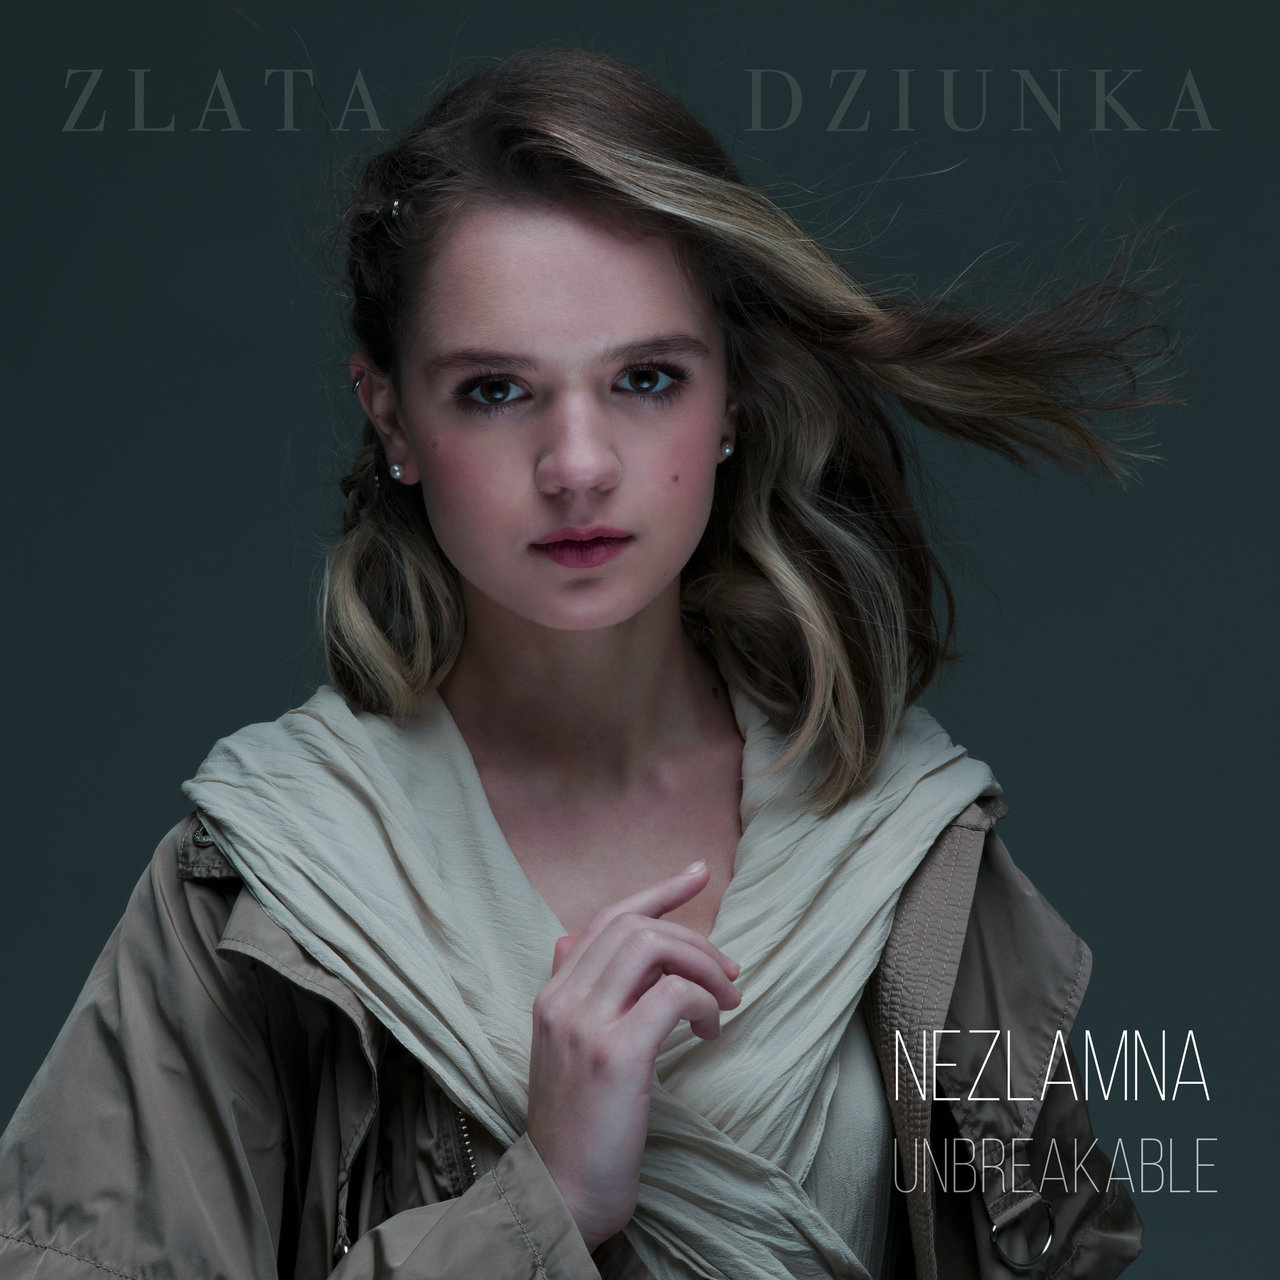 Zlata Dziunka — Nezlamna cover artwork